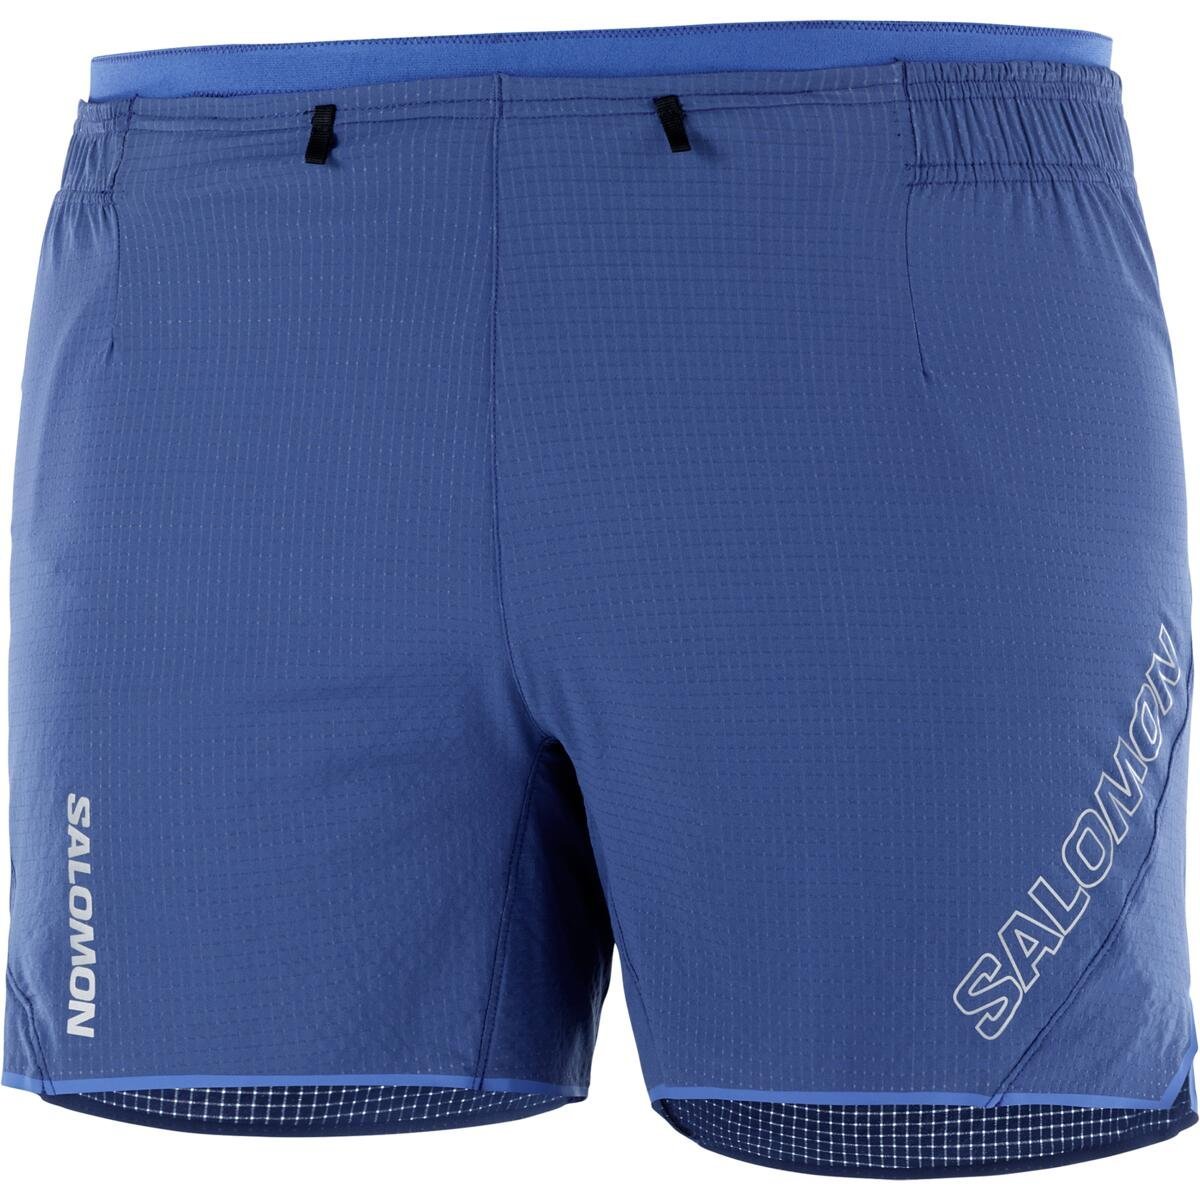 Šortky Salomon Sense Aero 5'' Shorts M - modrá